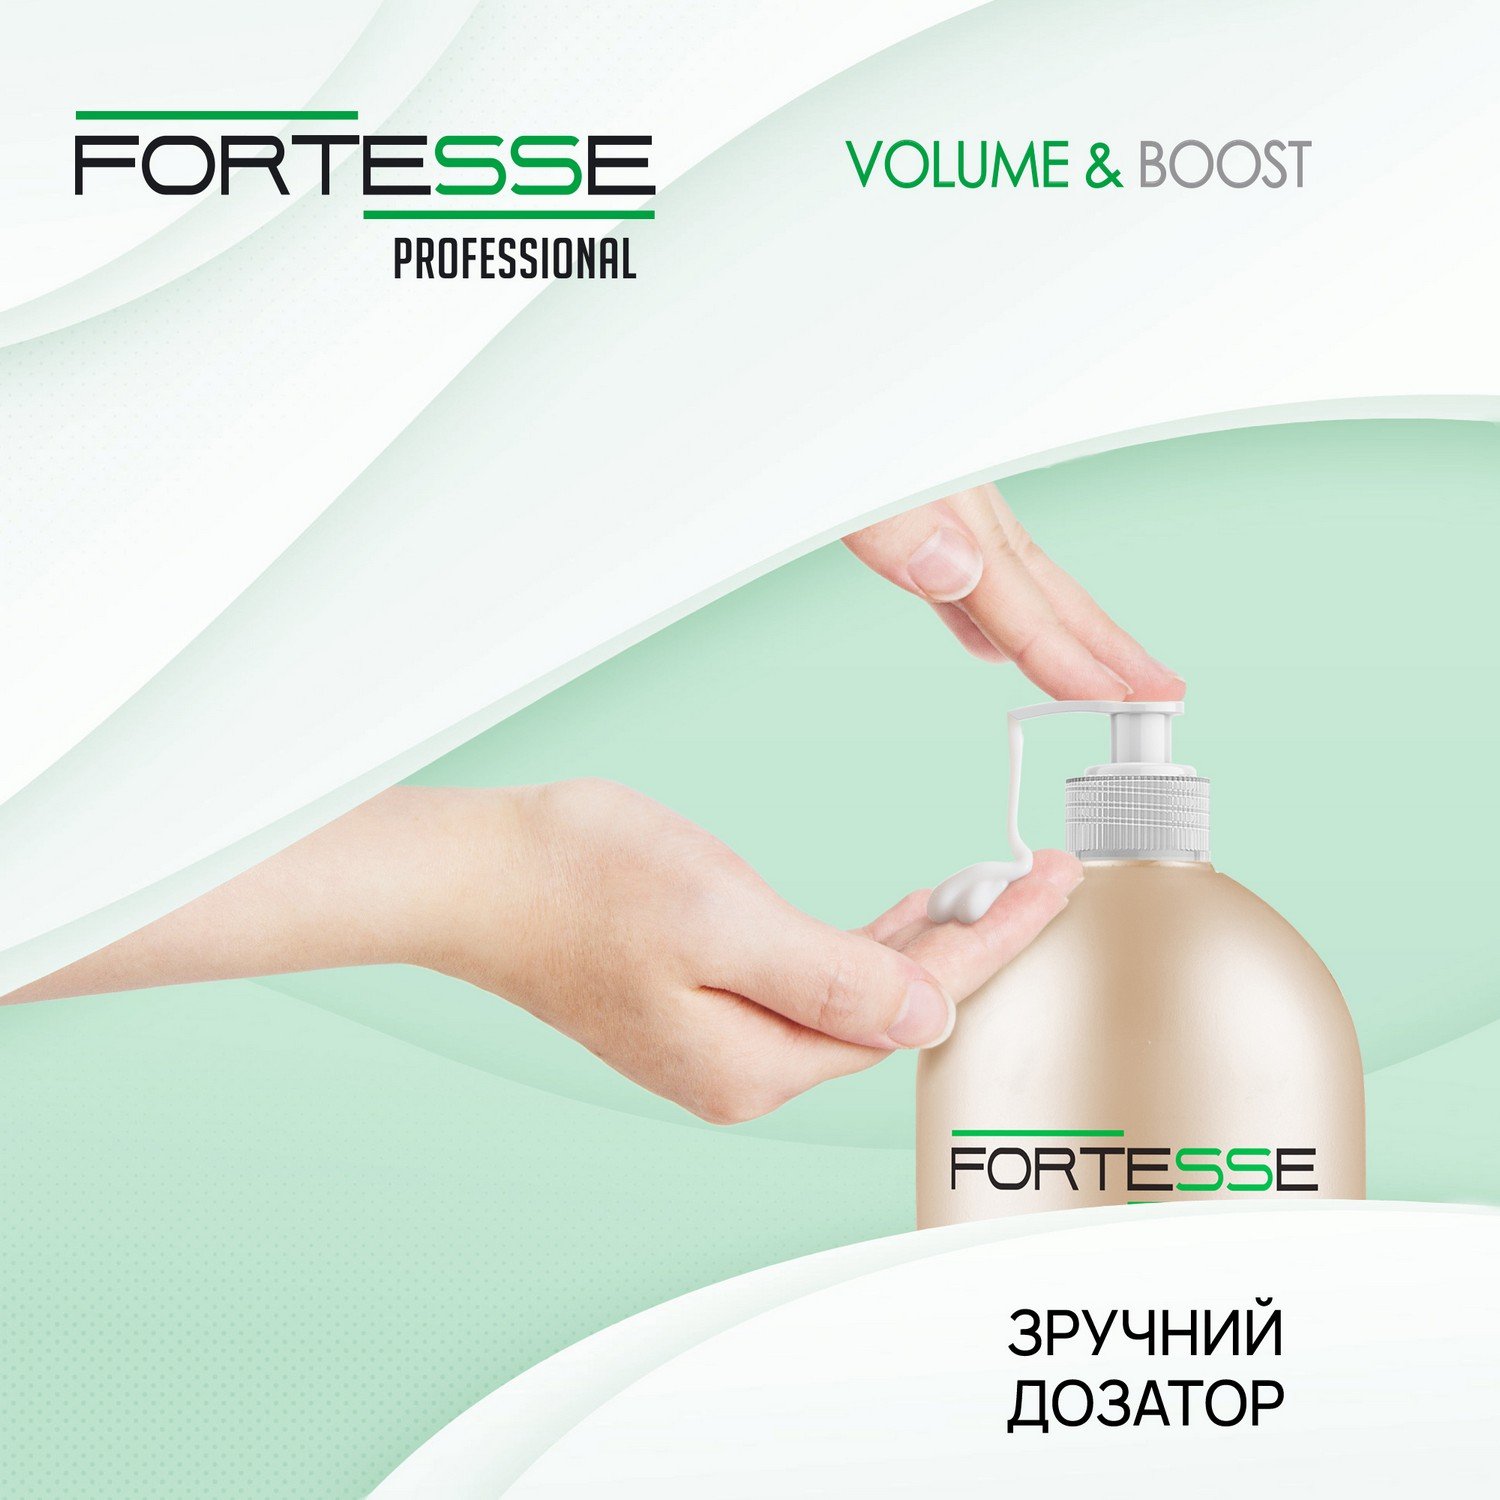 Шампунь Fortesse Professional Volume & Boost Объем, для тонких волос, с дозатором, 1000 мл - фото 4